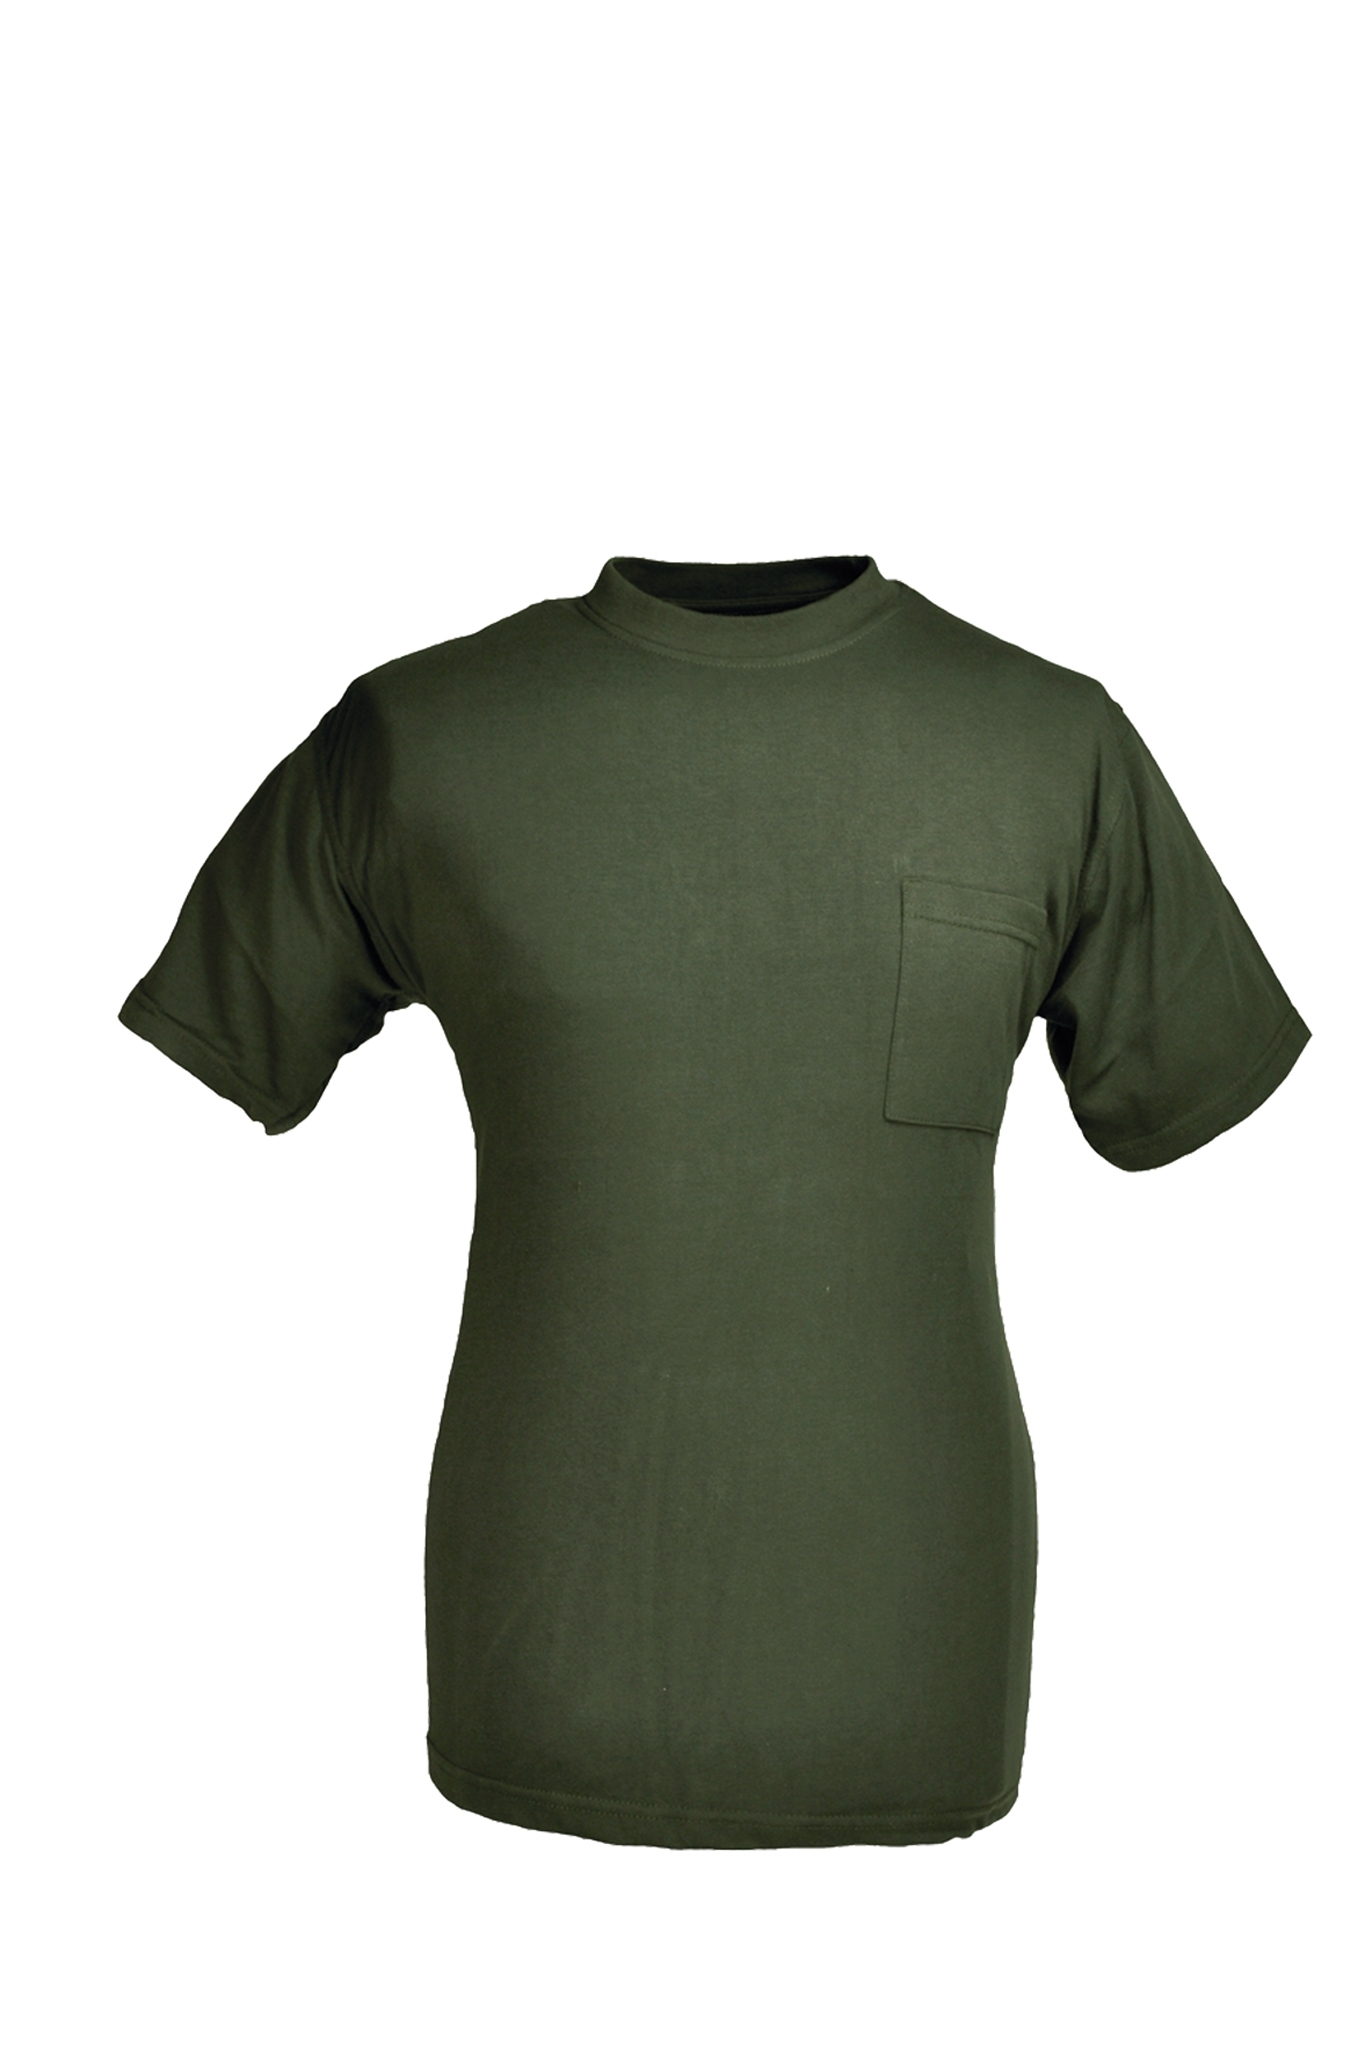 Rundhals T-Shirt oliv Gr.4XL 10227843